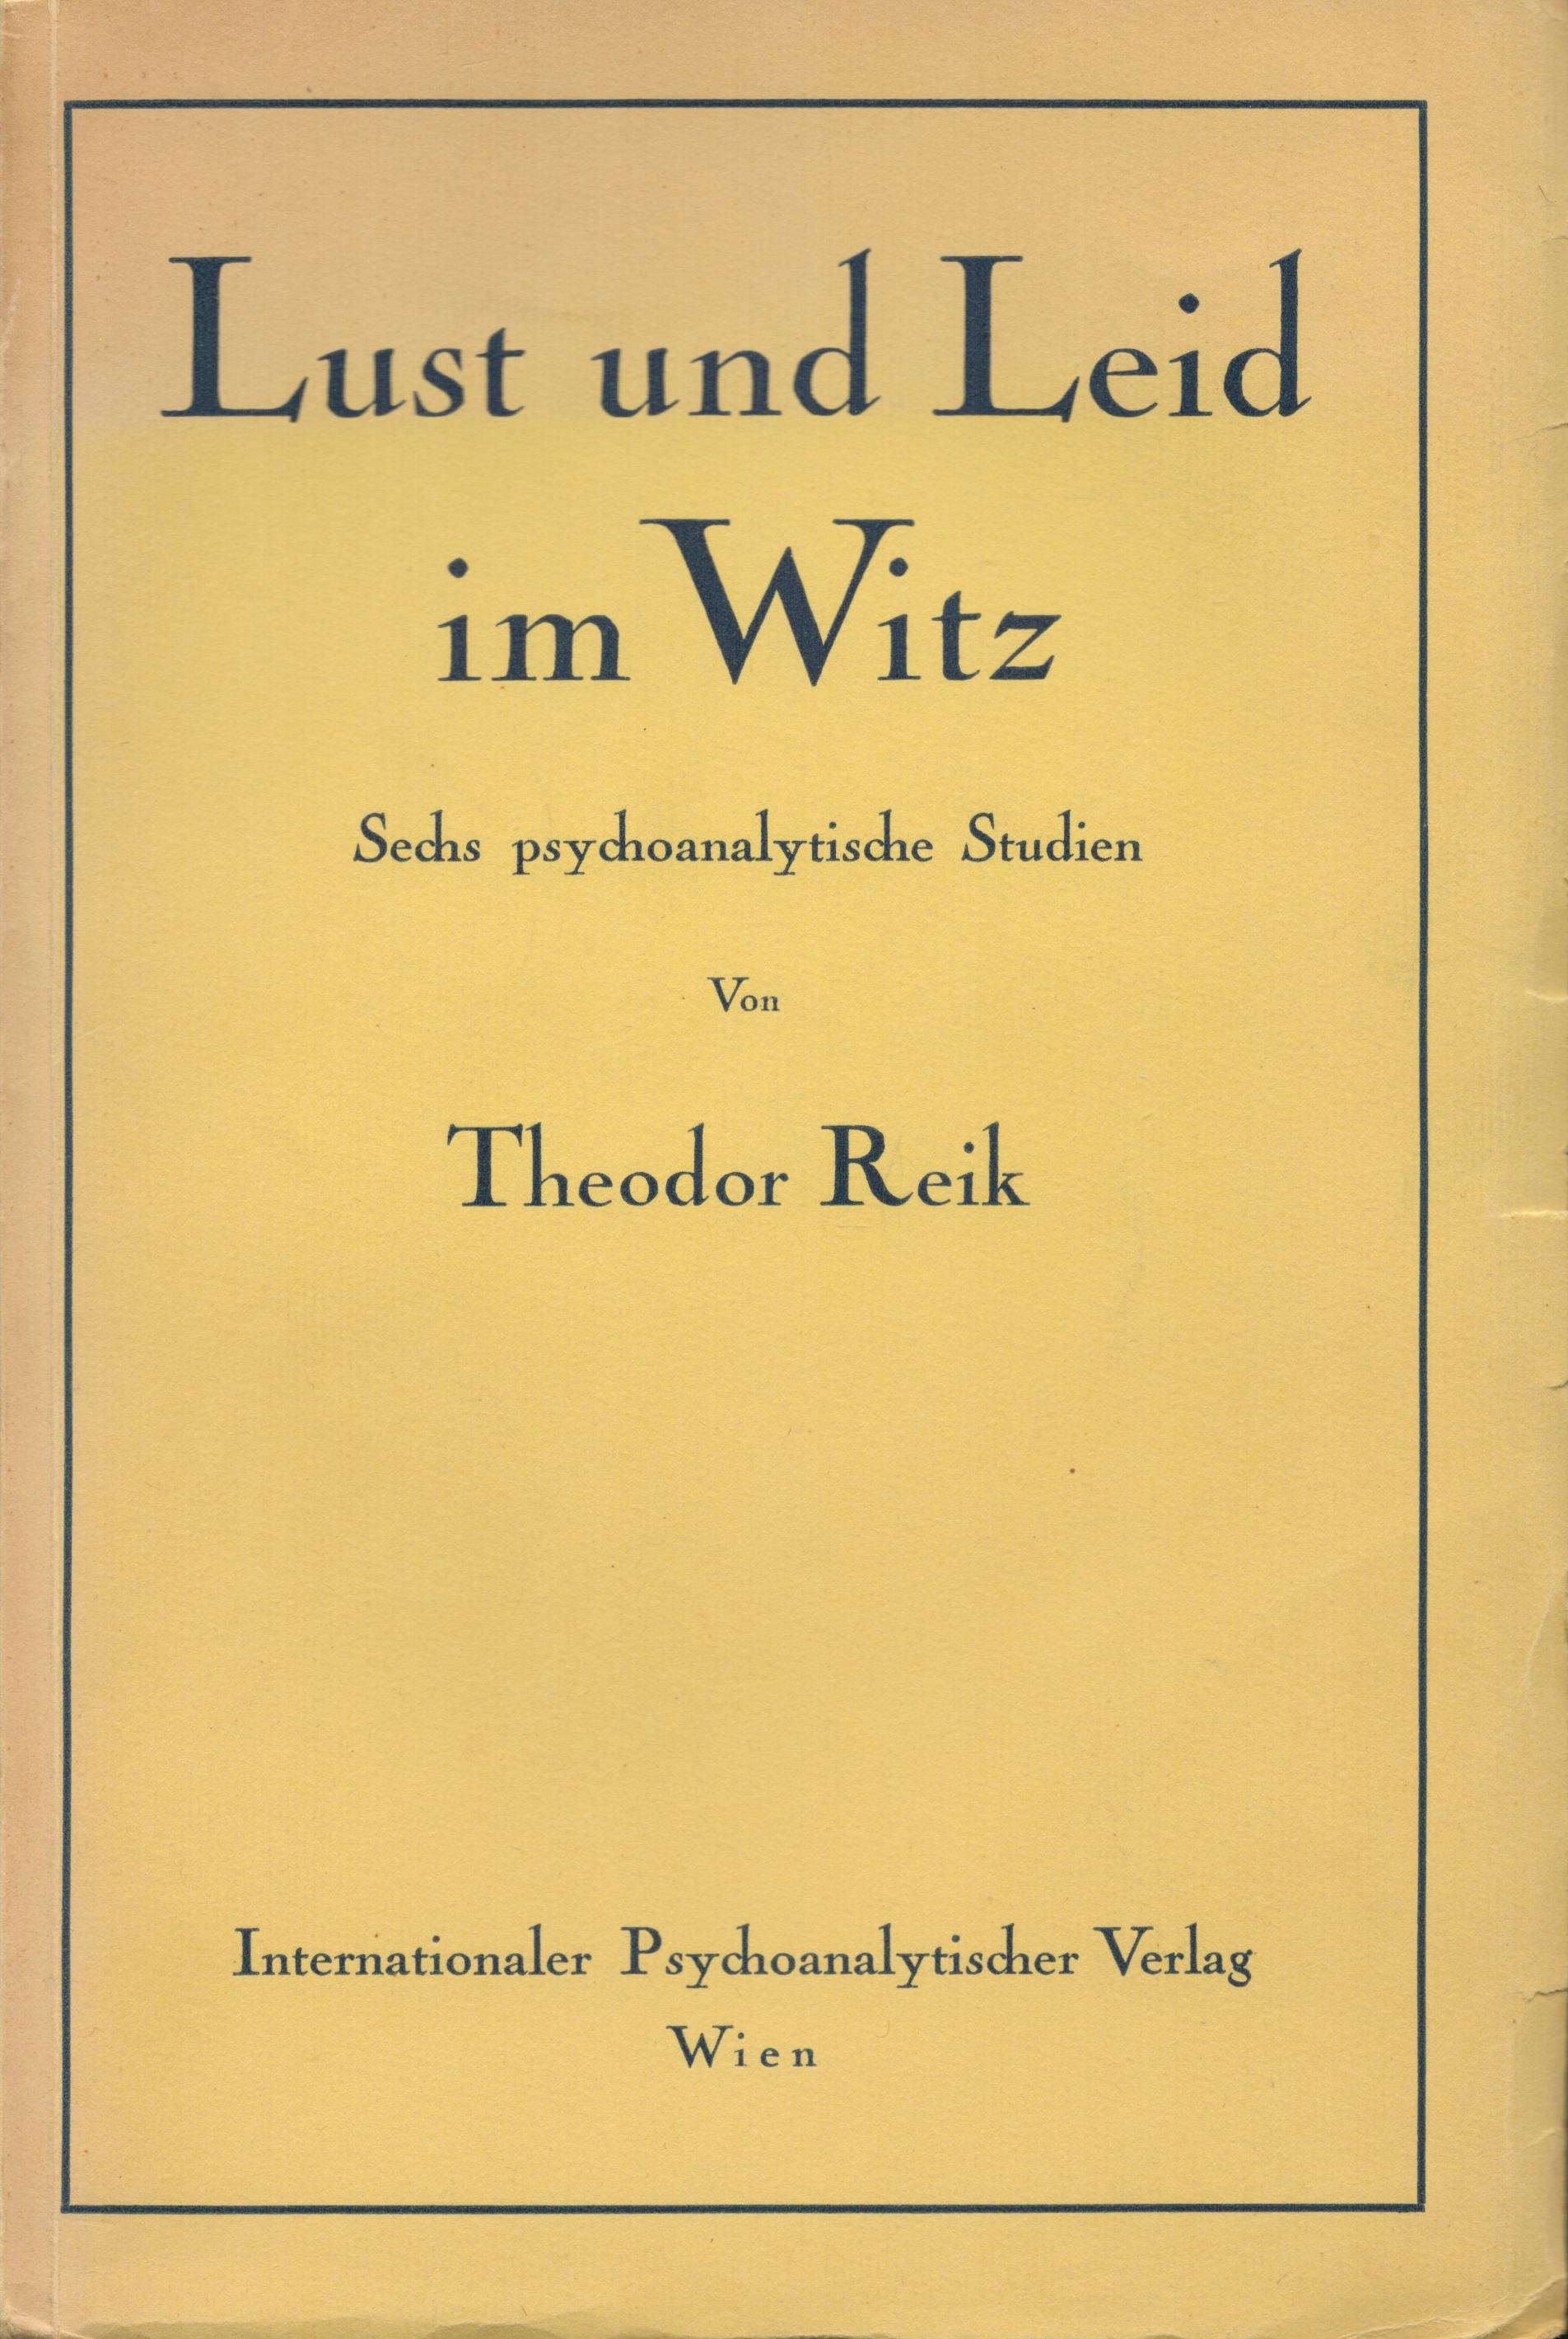 Theodor reik - Lust und leid im Witz (besonders gut erhaltenes Exemplar)